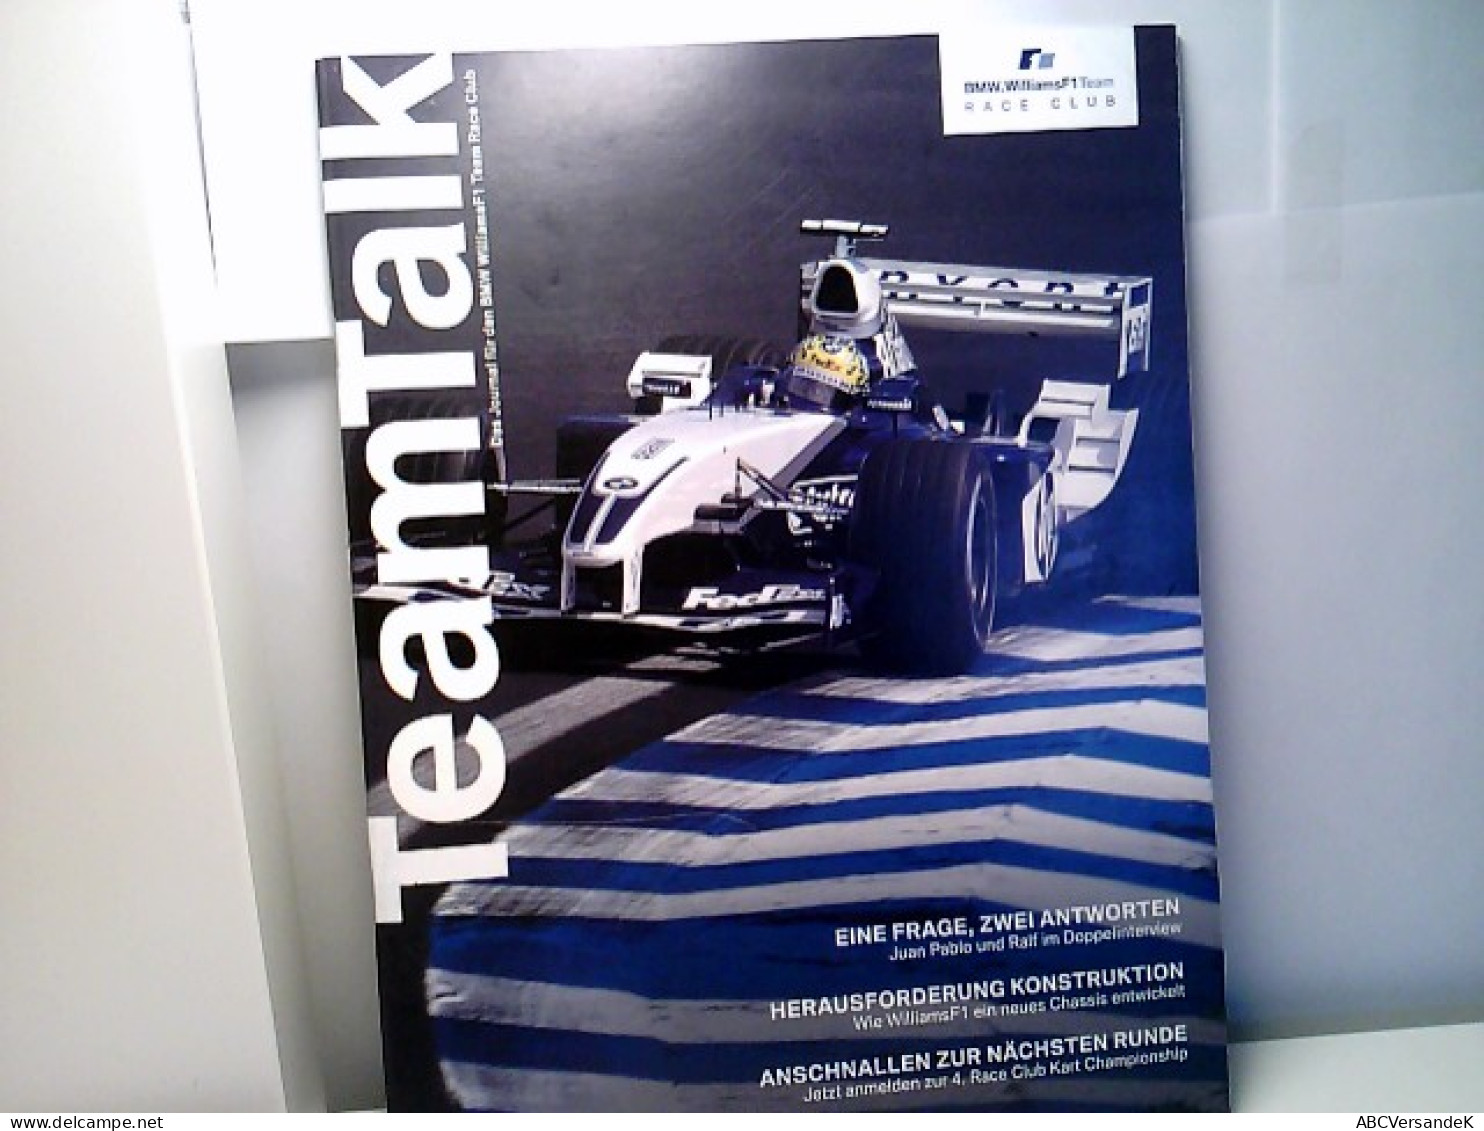 Team Talk Das Journal Für Den BMW WilliamsF1 Team Race Club. - Sports